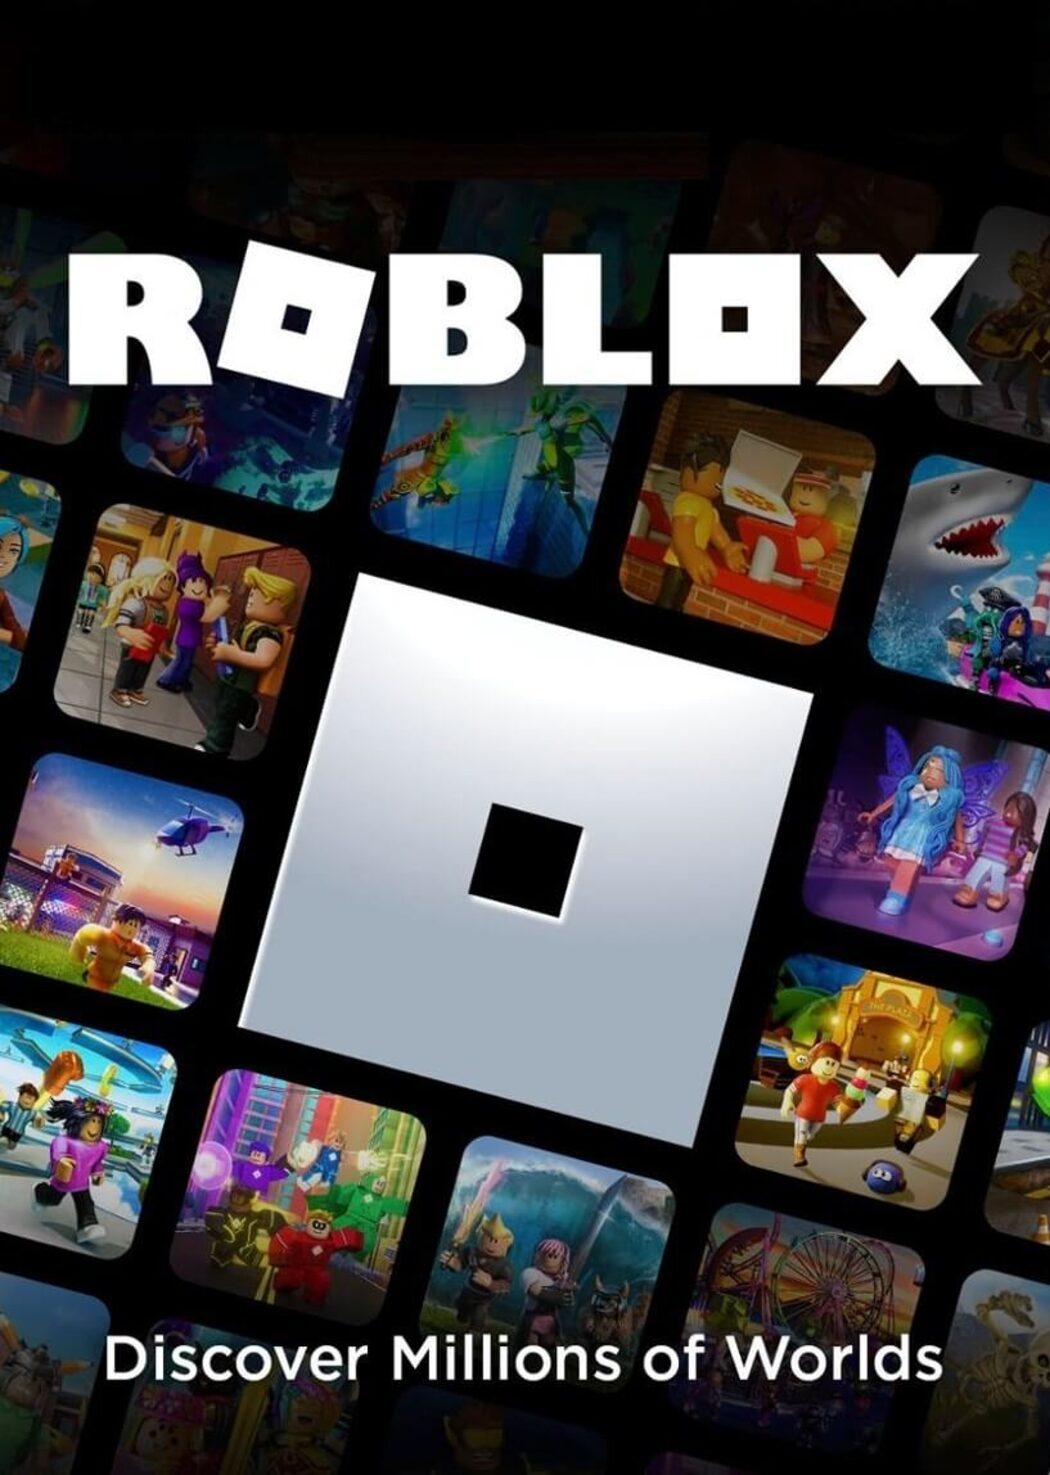 Nếu bạn muốn mua thẻ Robux giá rẻ, hãy ghé thăm ENEBA. Với mức giá 1,5 USD, bạn sẽ có số lượng thẻ Robux ấn tượng. Hãy nhanh tay chọn lựa để có được số Robux bạn cần để tha hồ trải nghiệm game trong Roblox.